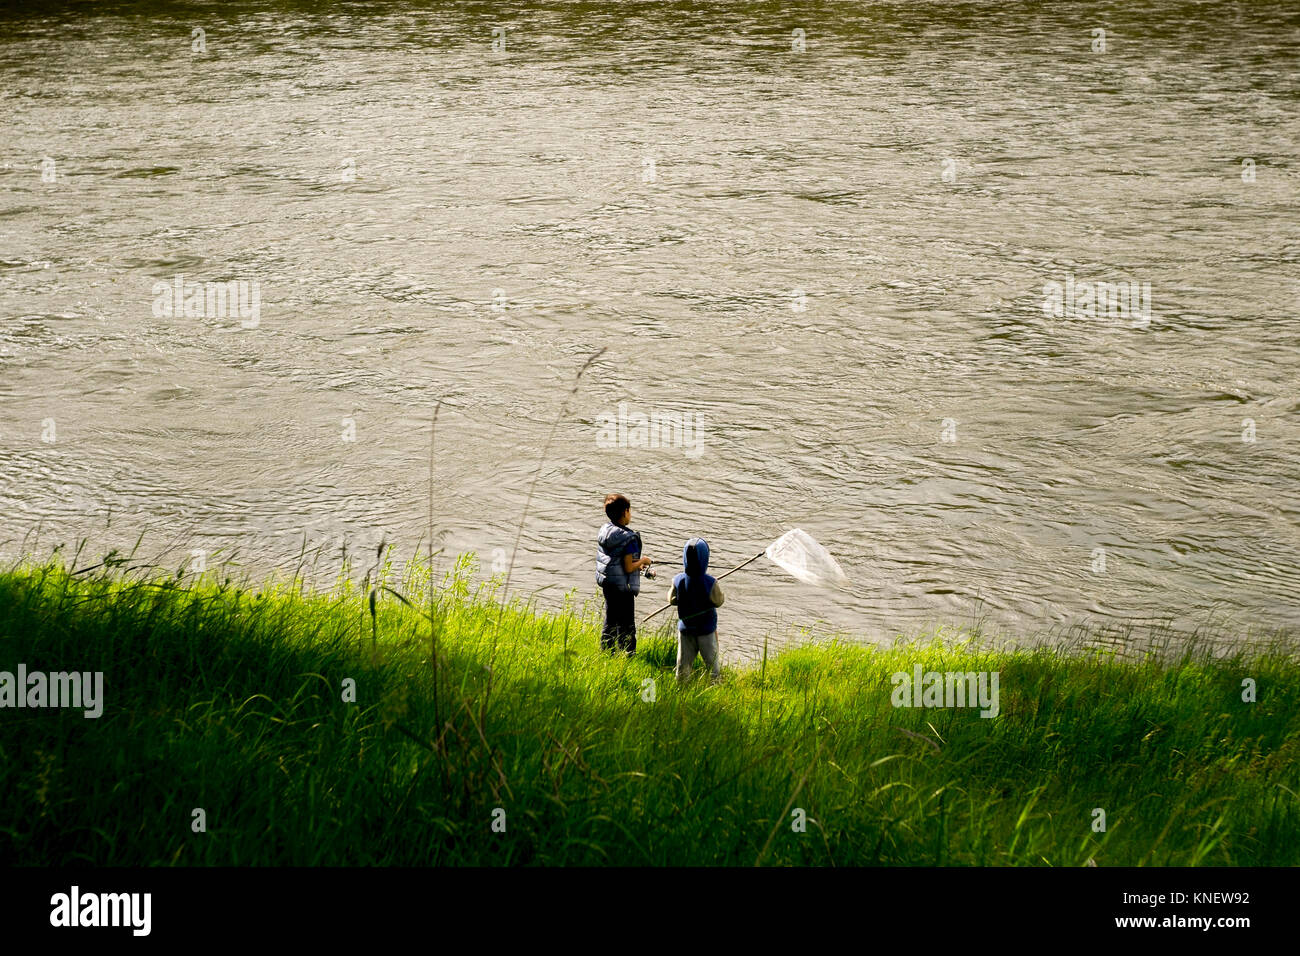 Deux garçons à côté de l'eau, filet de pêche holding, augmentation de la vue, de l'Oural, Chelyabinsk, Russie, Europe Banque D'Images